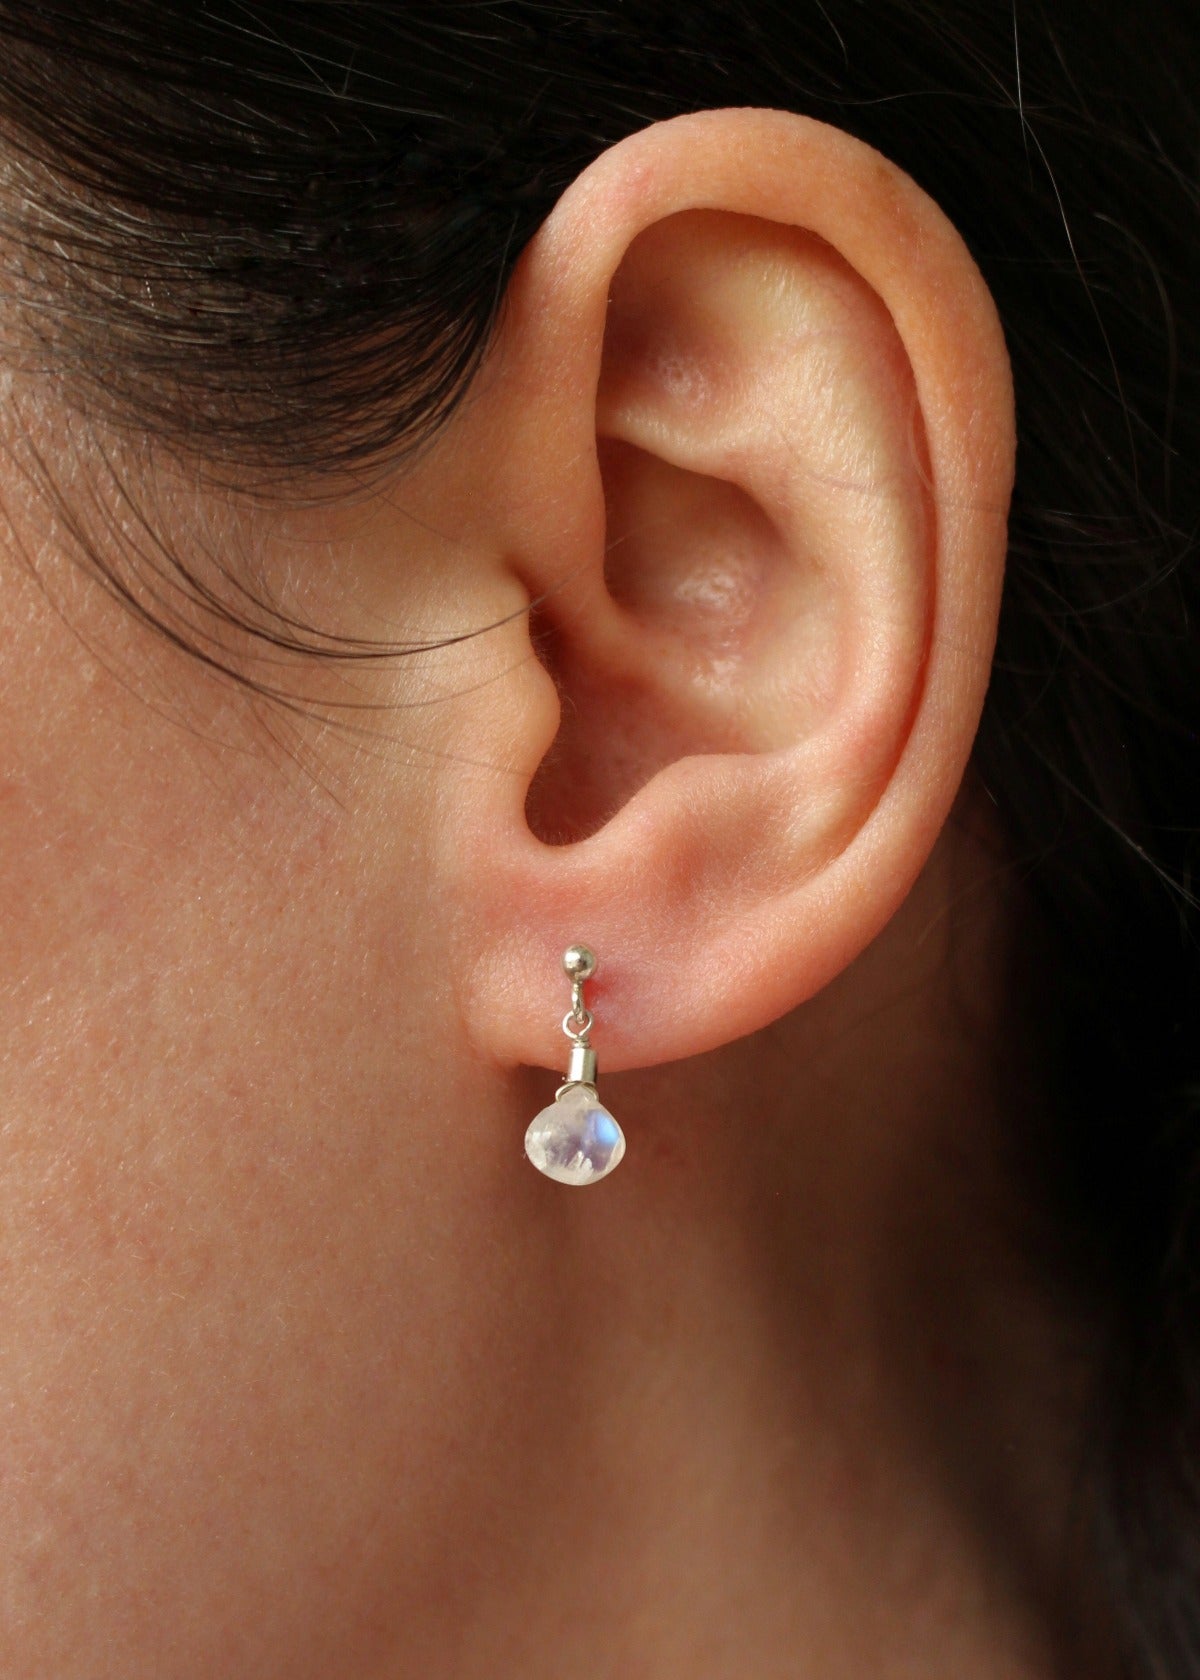 Load image into Gallery viewer, Moonstone Stud Earrings by Sadie Jewellery
